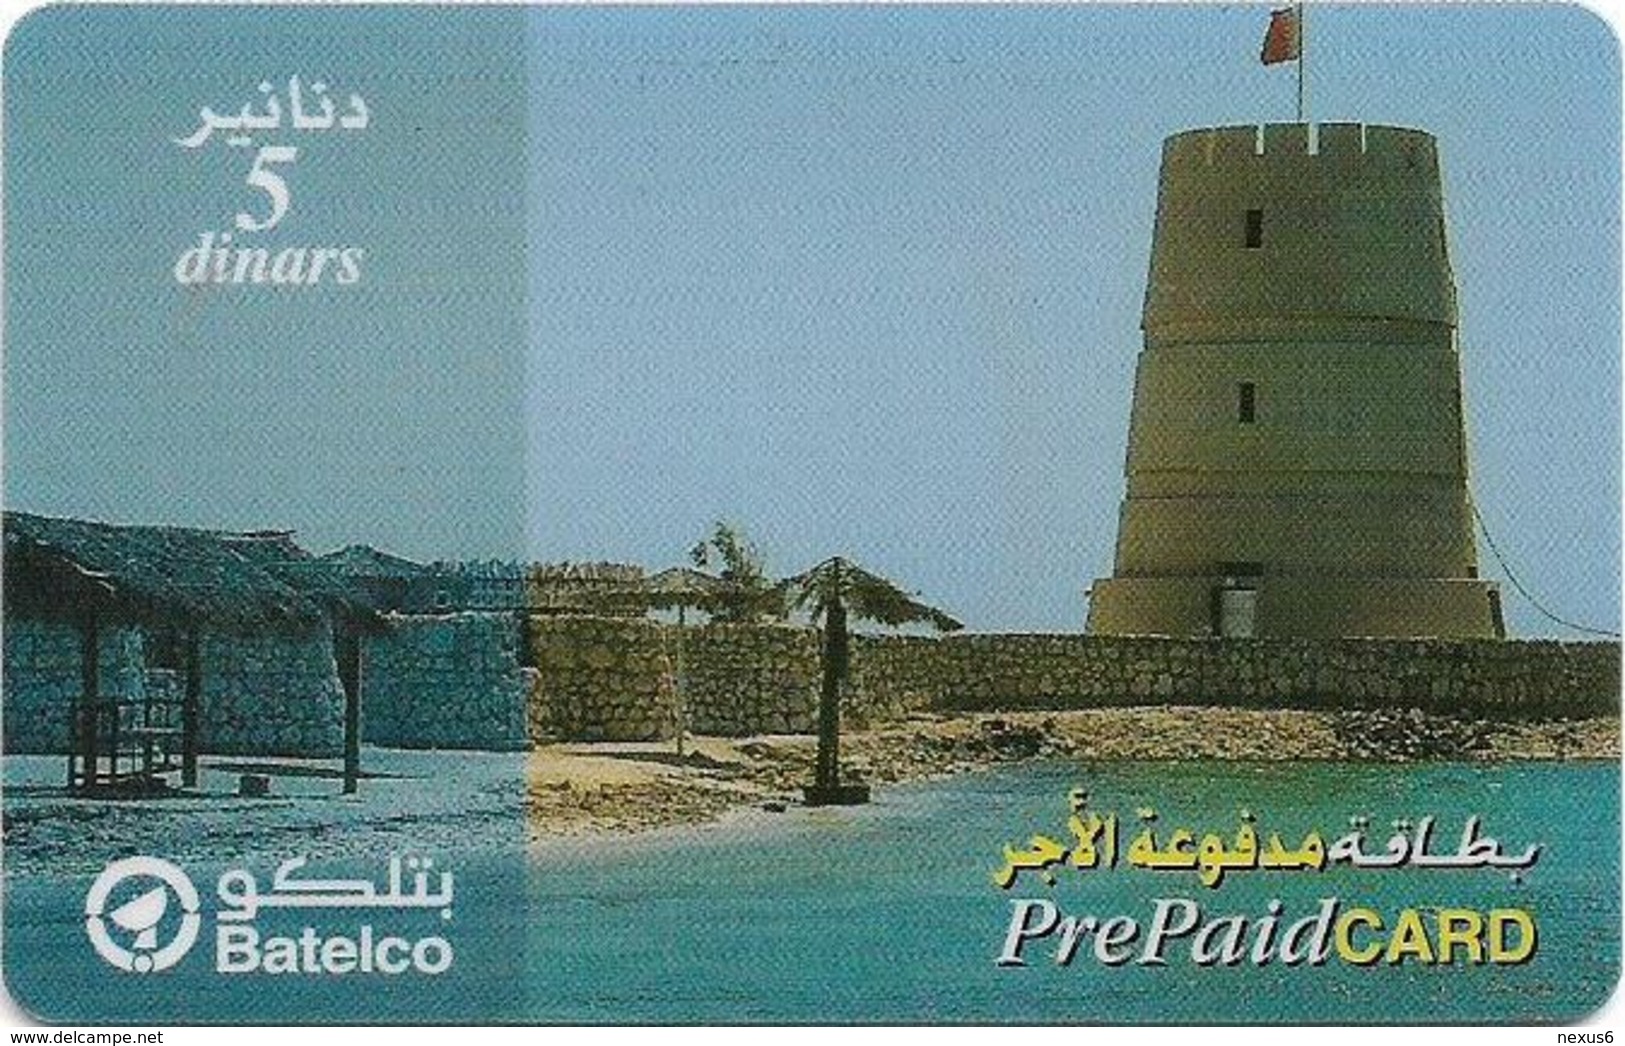 Bahrain - Batelco - Tower At Coast, 5BD Prepaid Card, Used - Bahrein